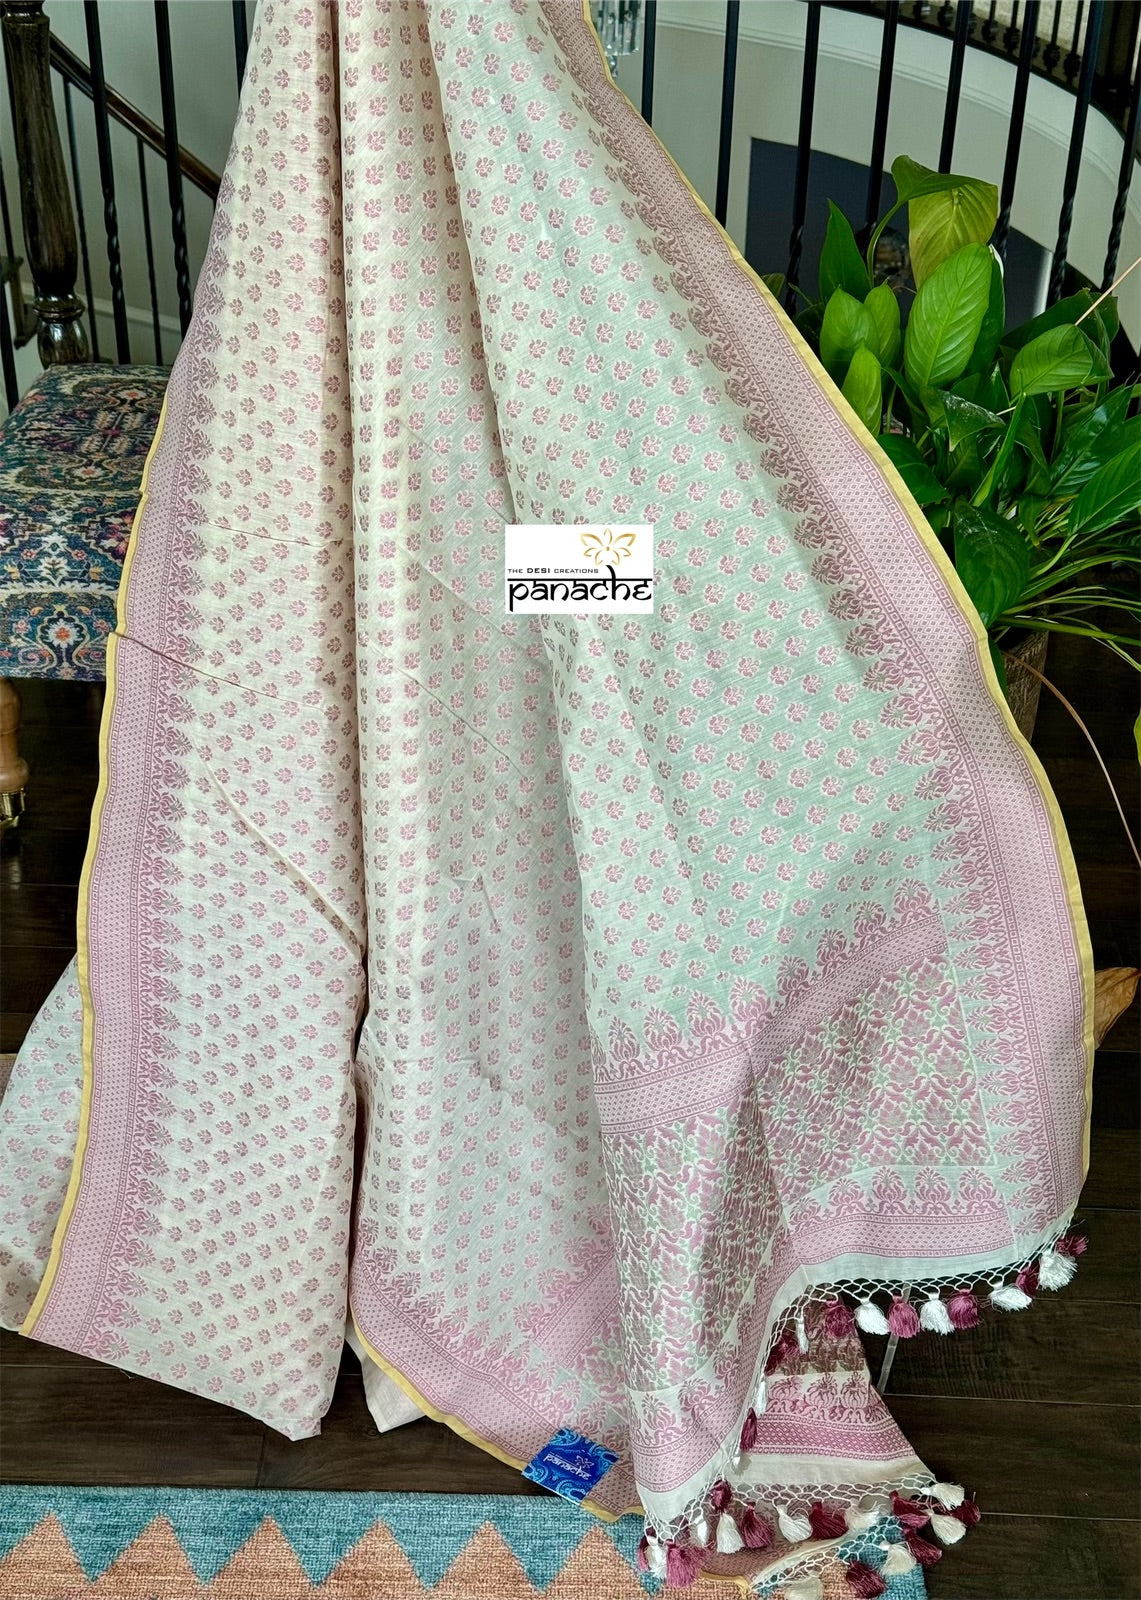 Kora Cotton Banarasi - Vintage White Pink